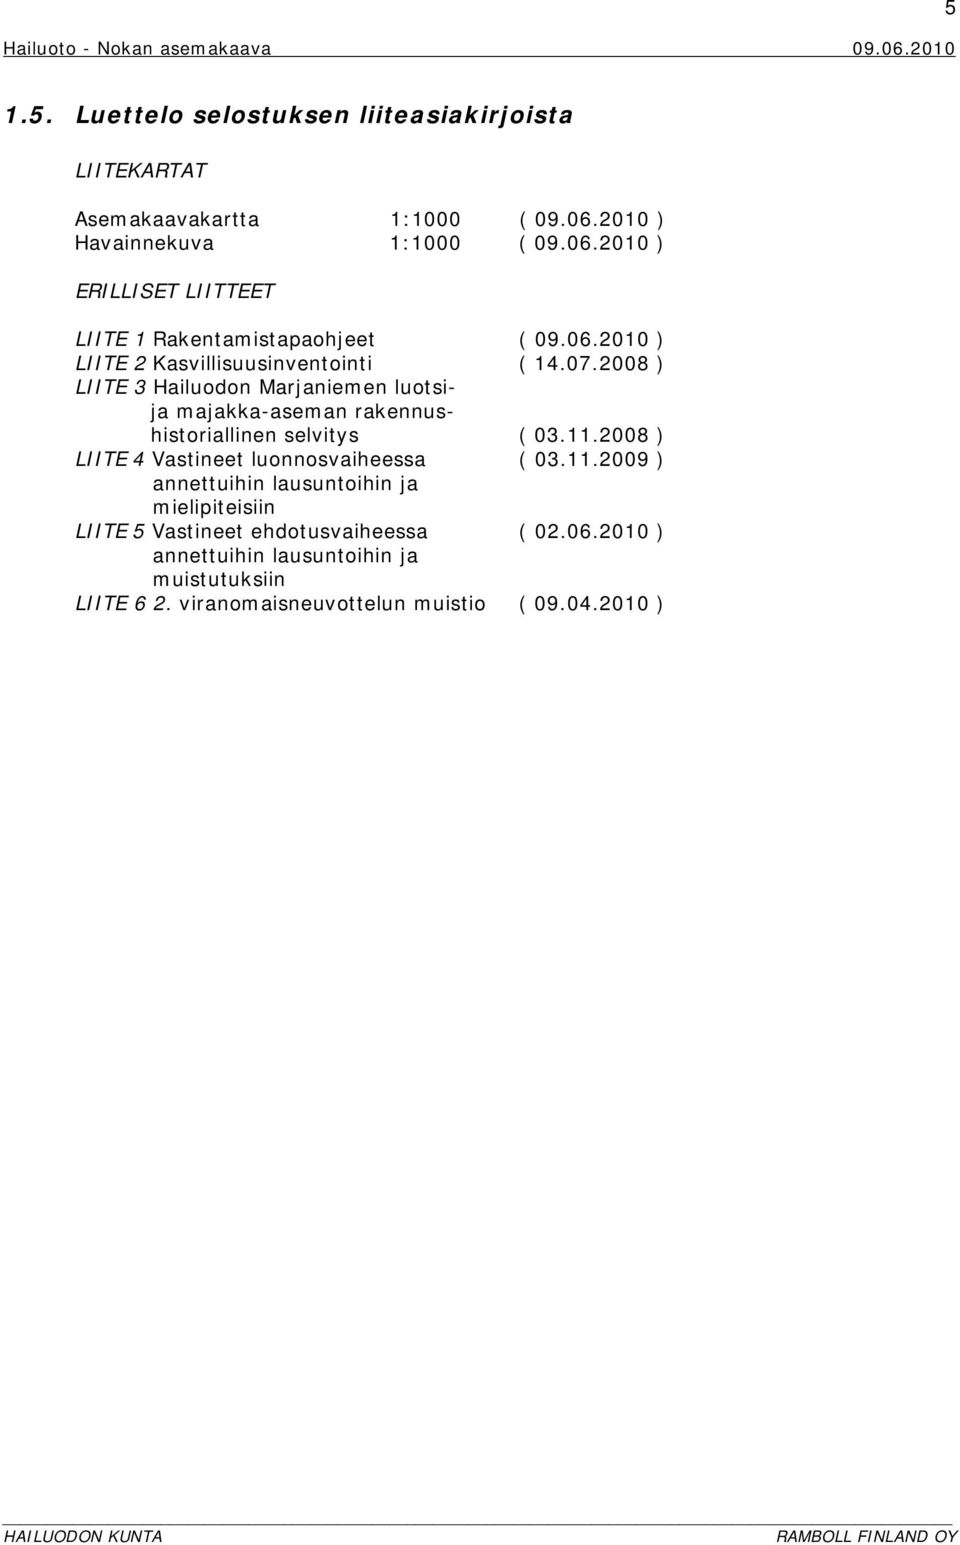 2008 ) LIITE 3 Hailuodon Marjaniemen luotsija majakka-aseman rakennushistoriallinen selvitys ( 03.11.